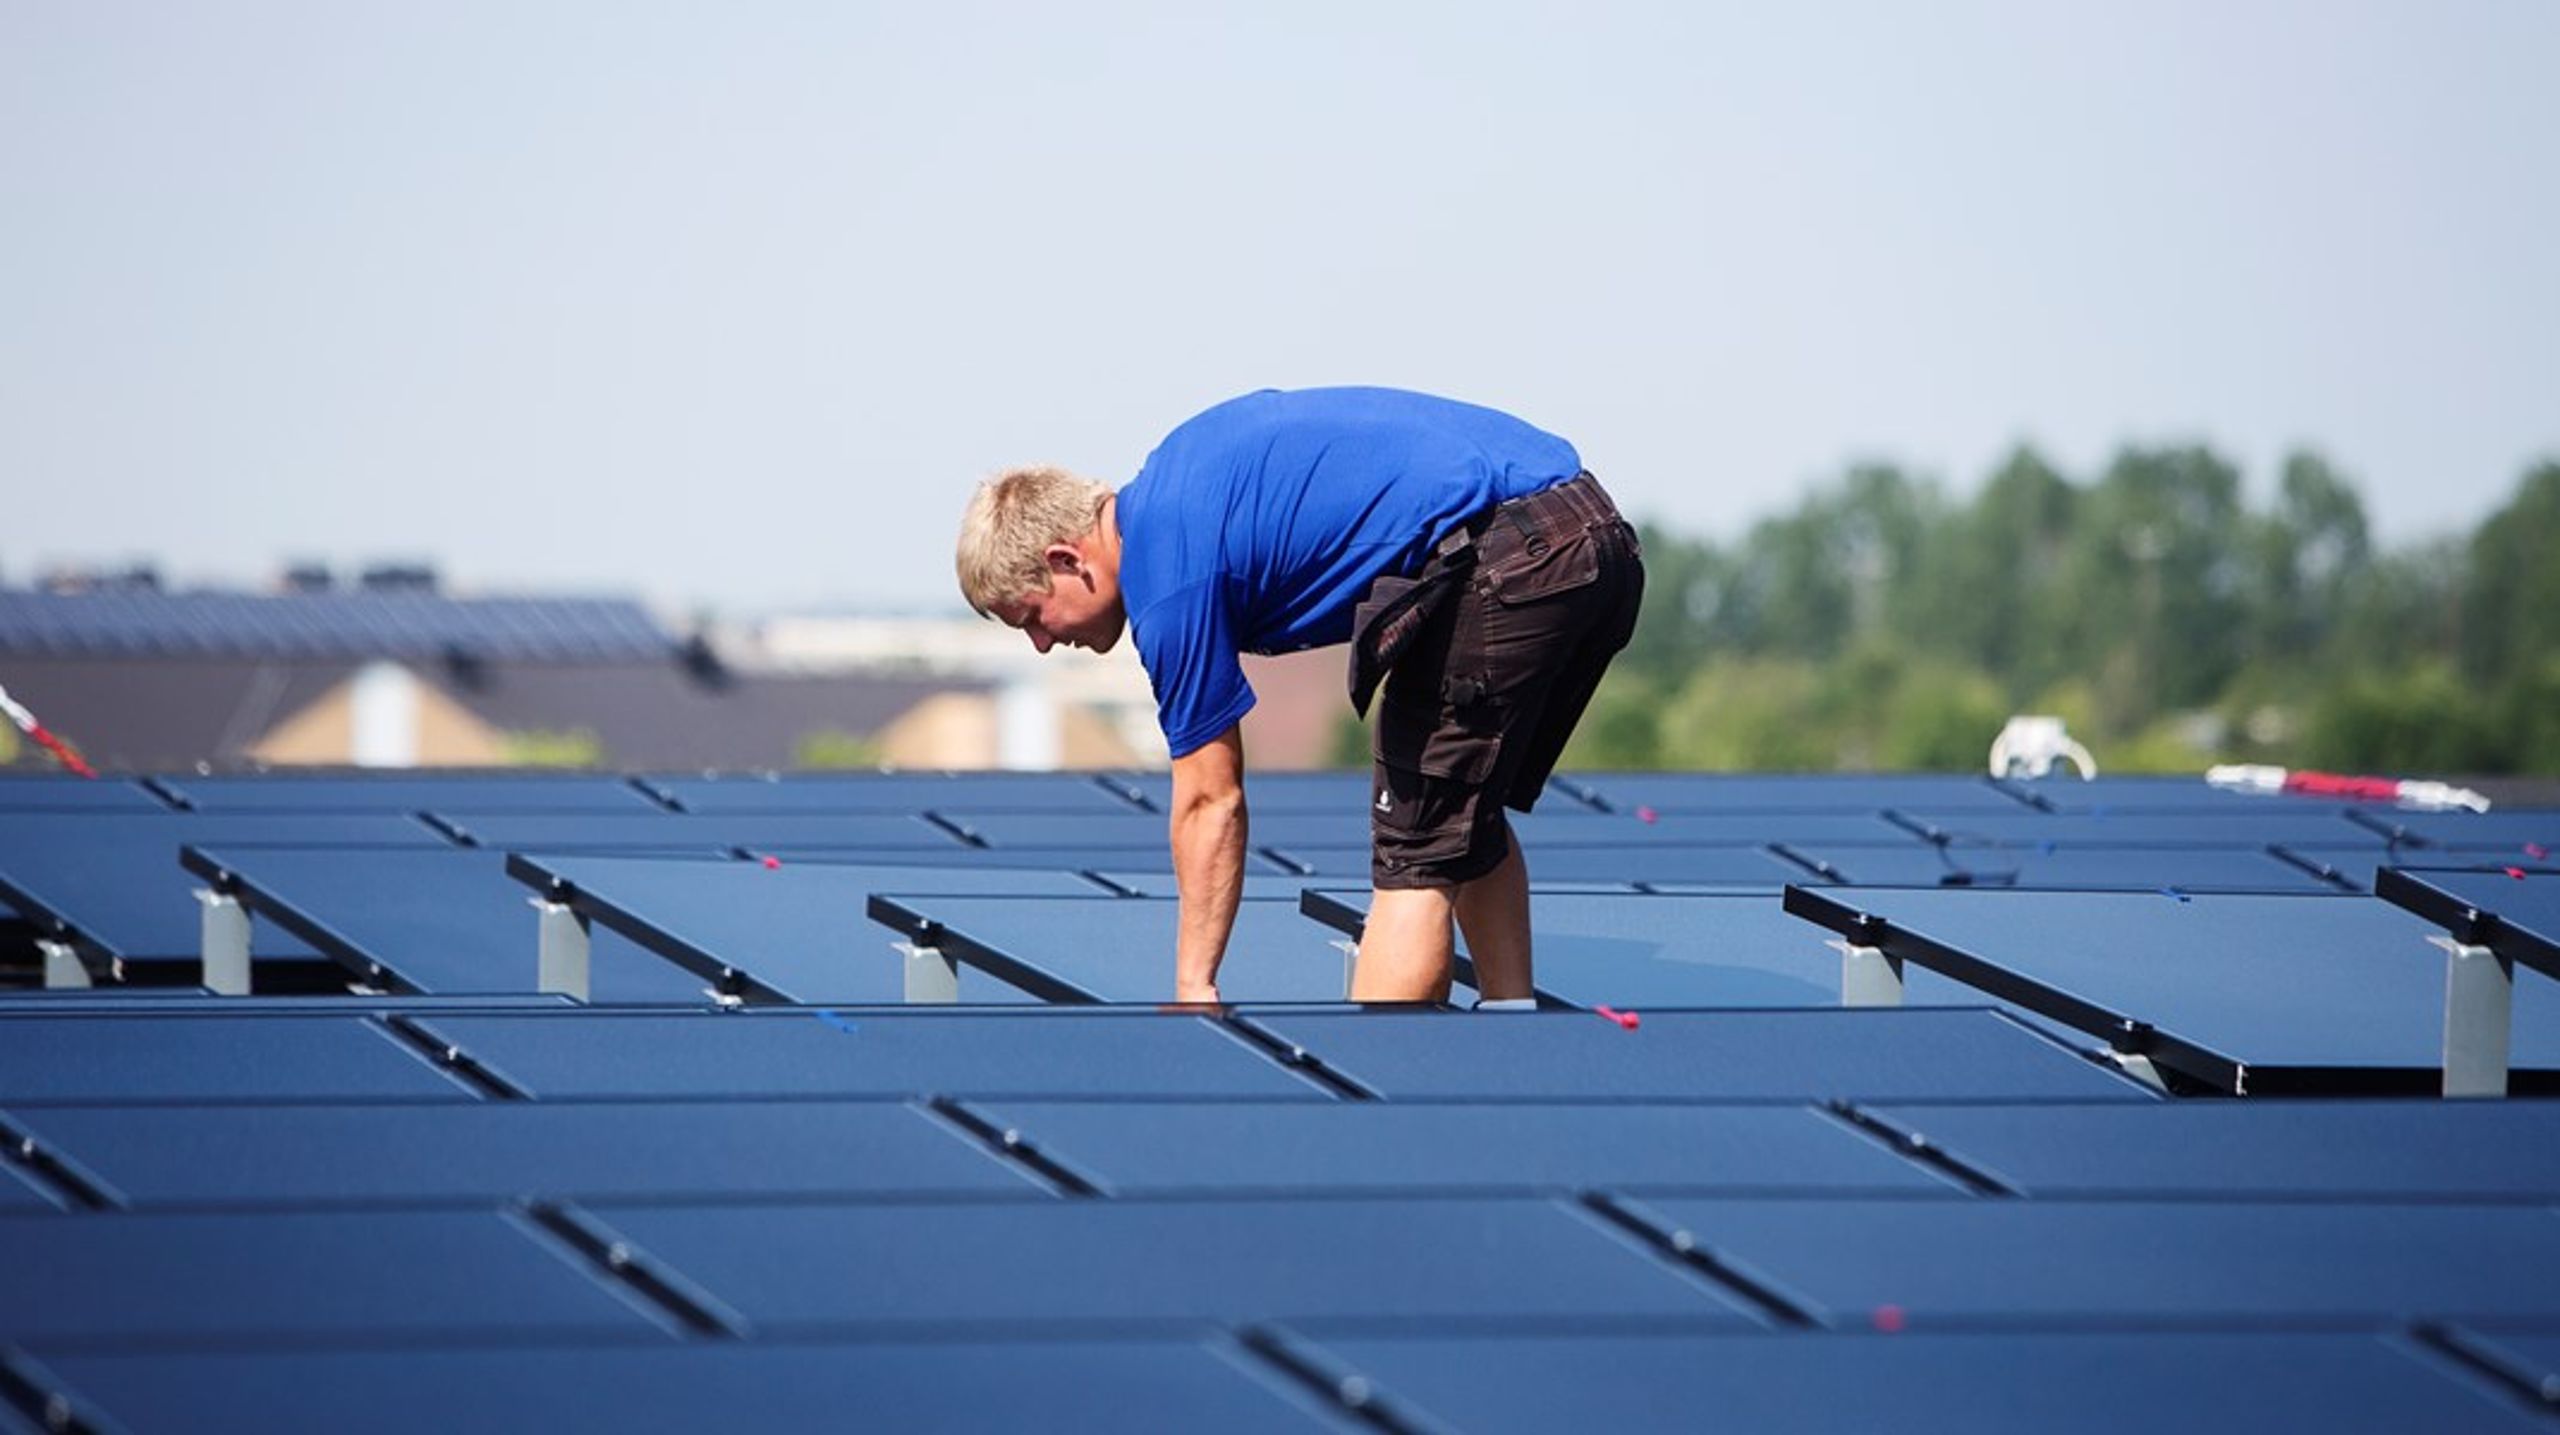 Der er ikke nogen tvivl om, at solceller på tage (over en bred kam) er markant dyrere end private solceller på marker og vindmøller, skriver Anders Storgaard (K).